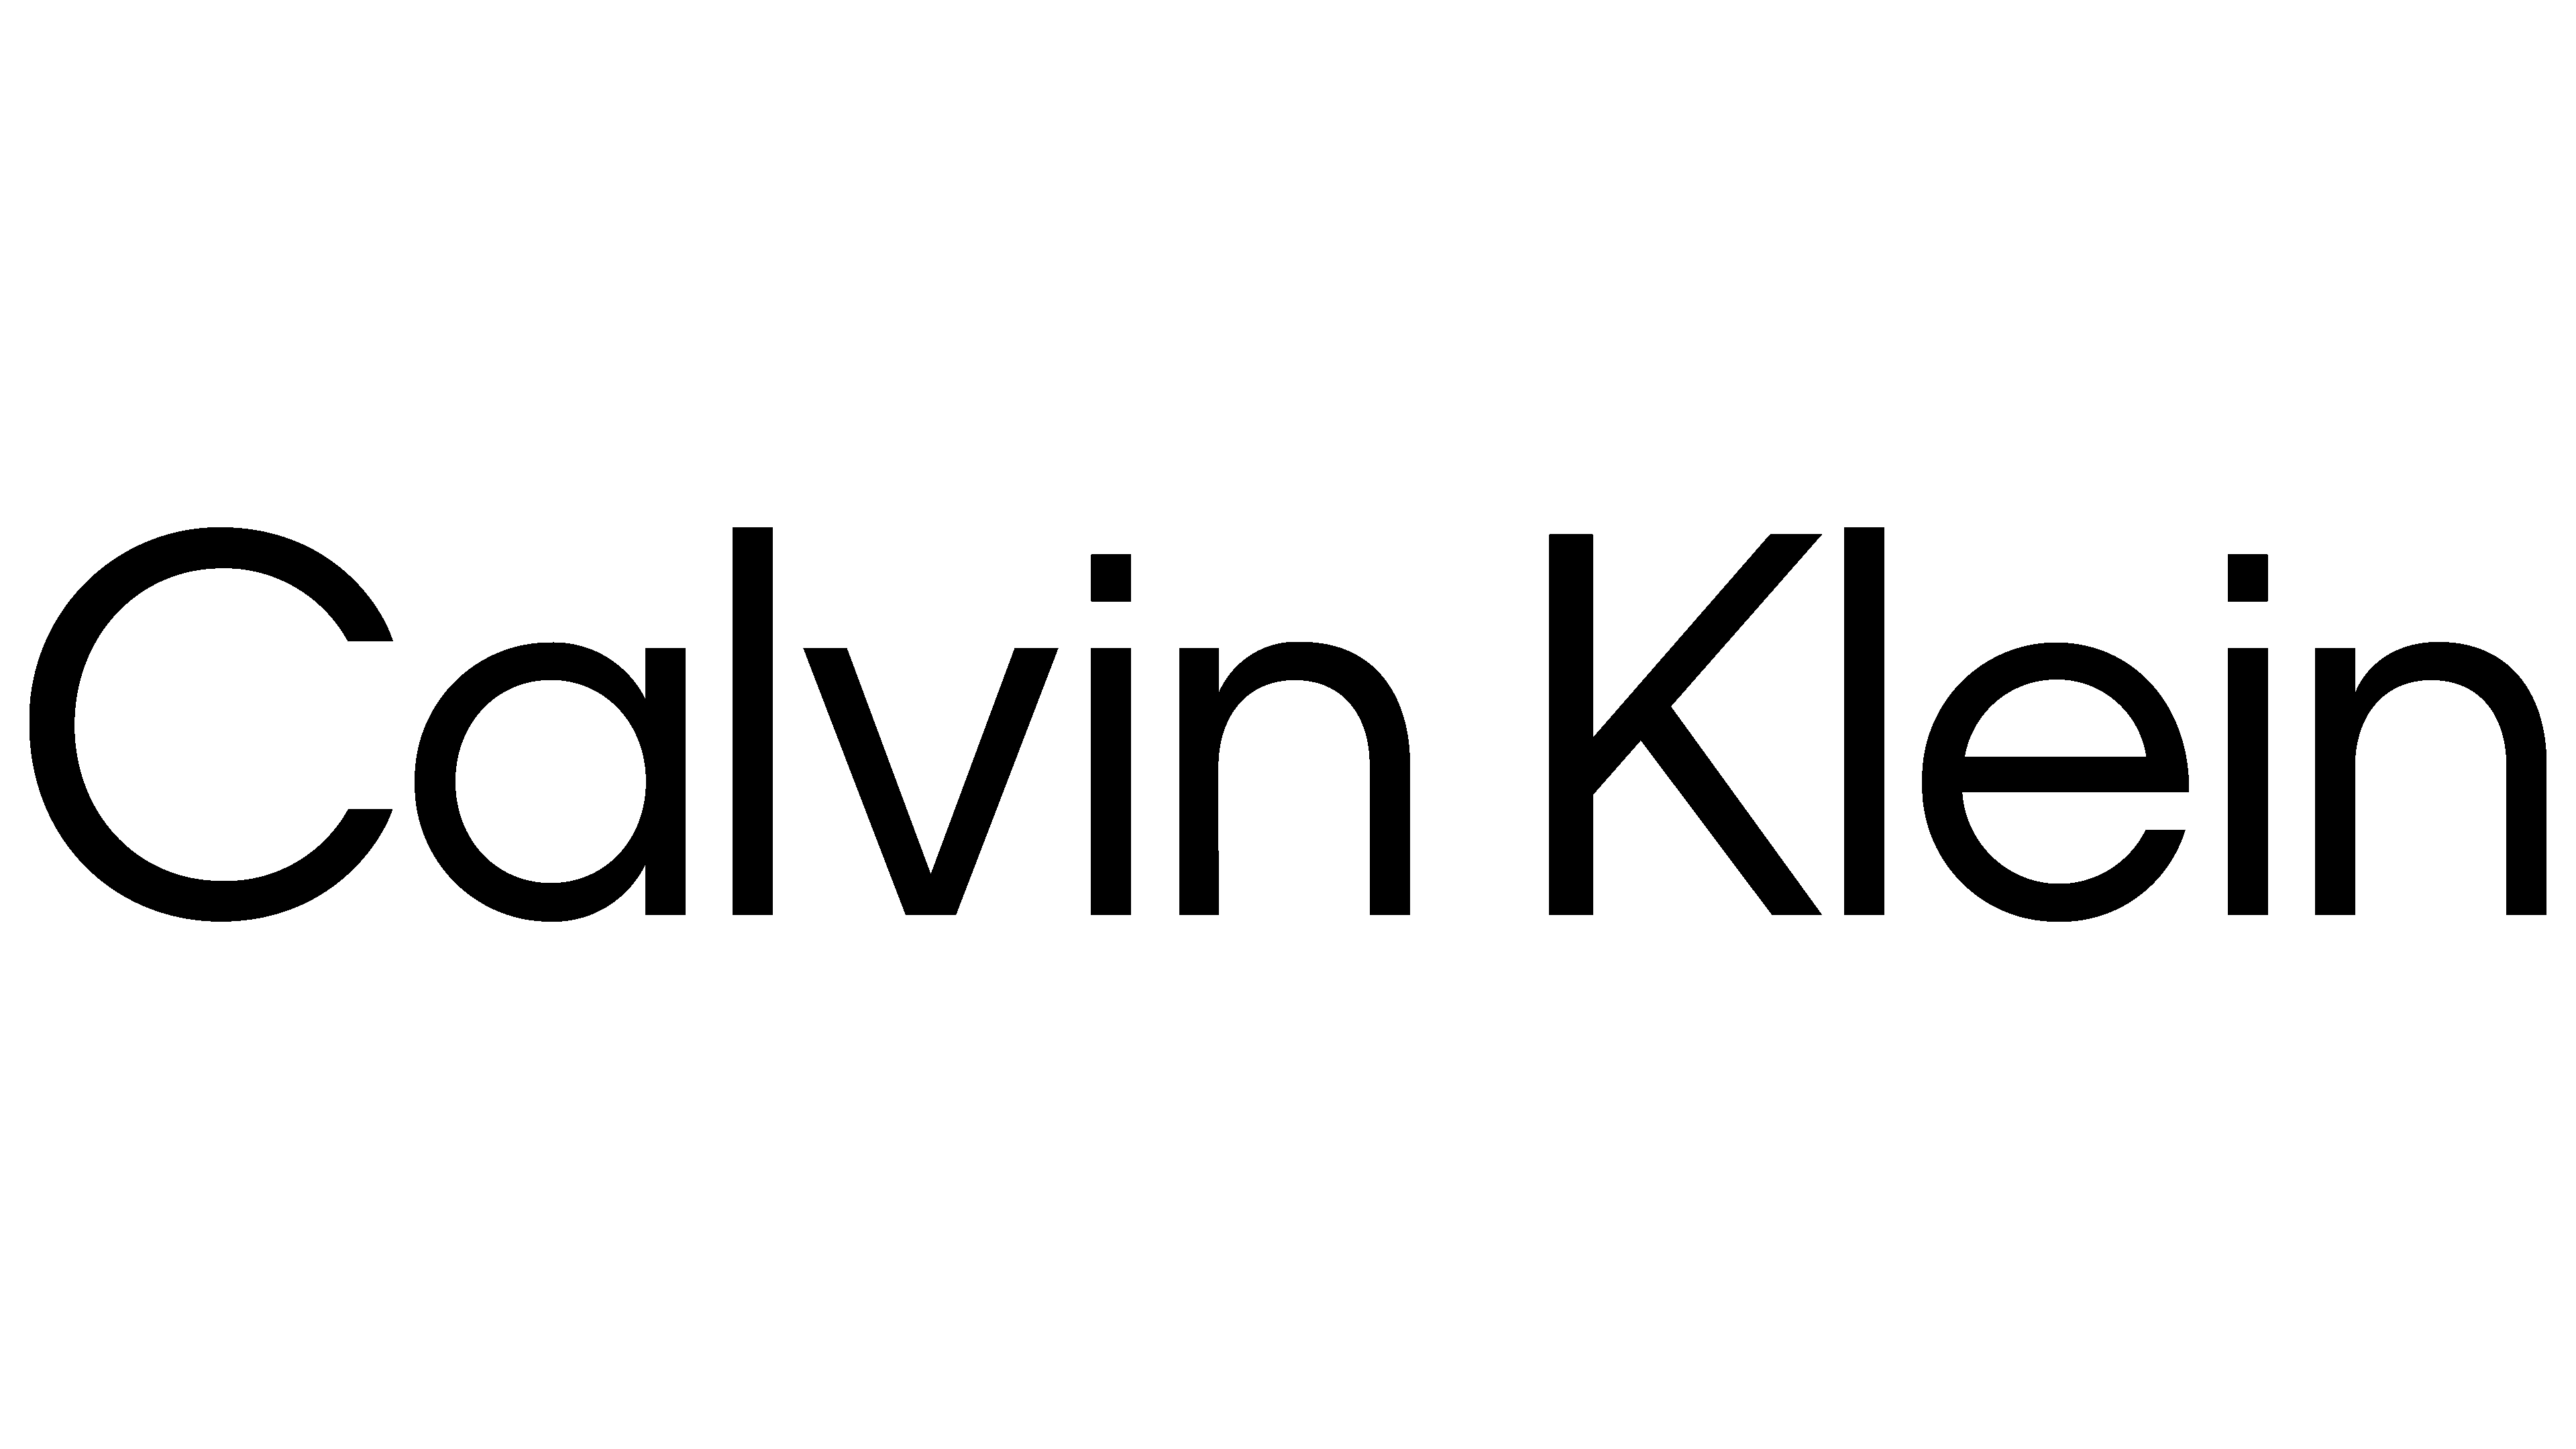 Calvin Klein2